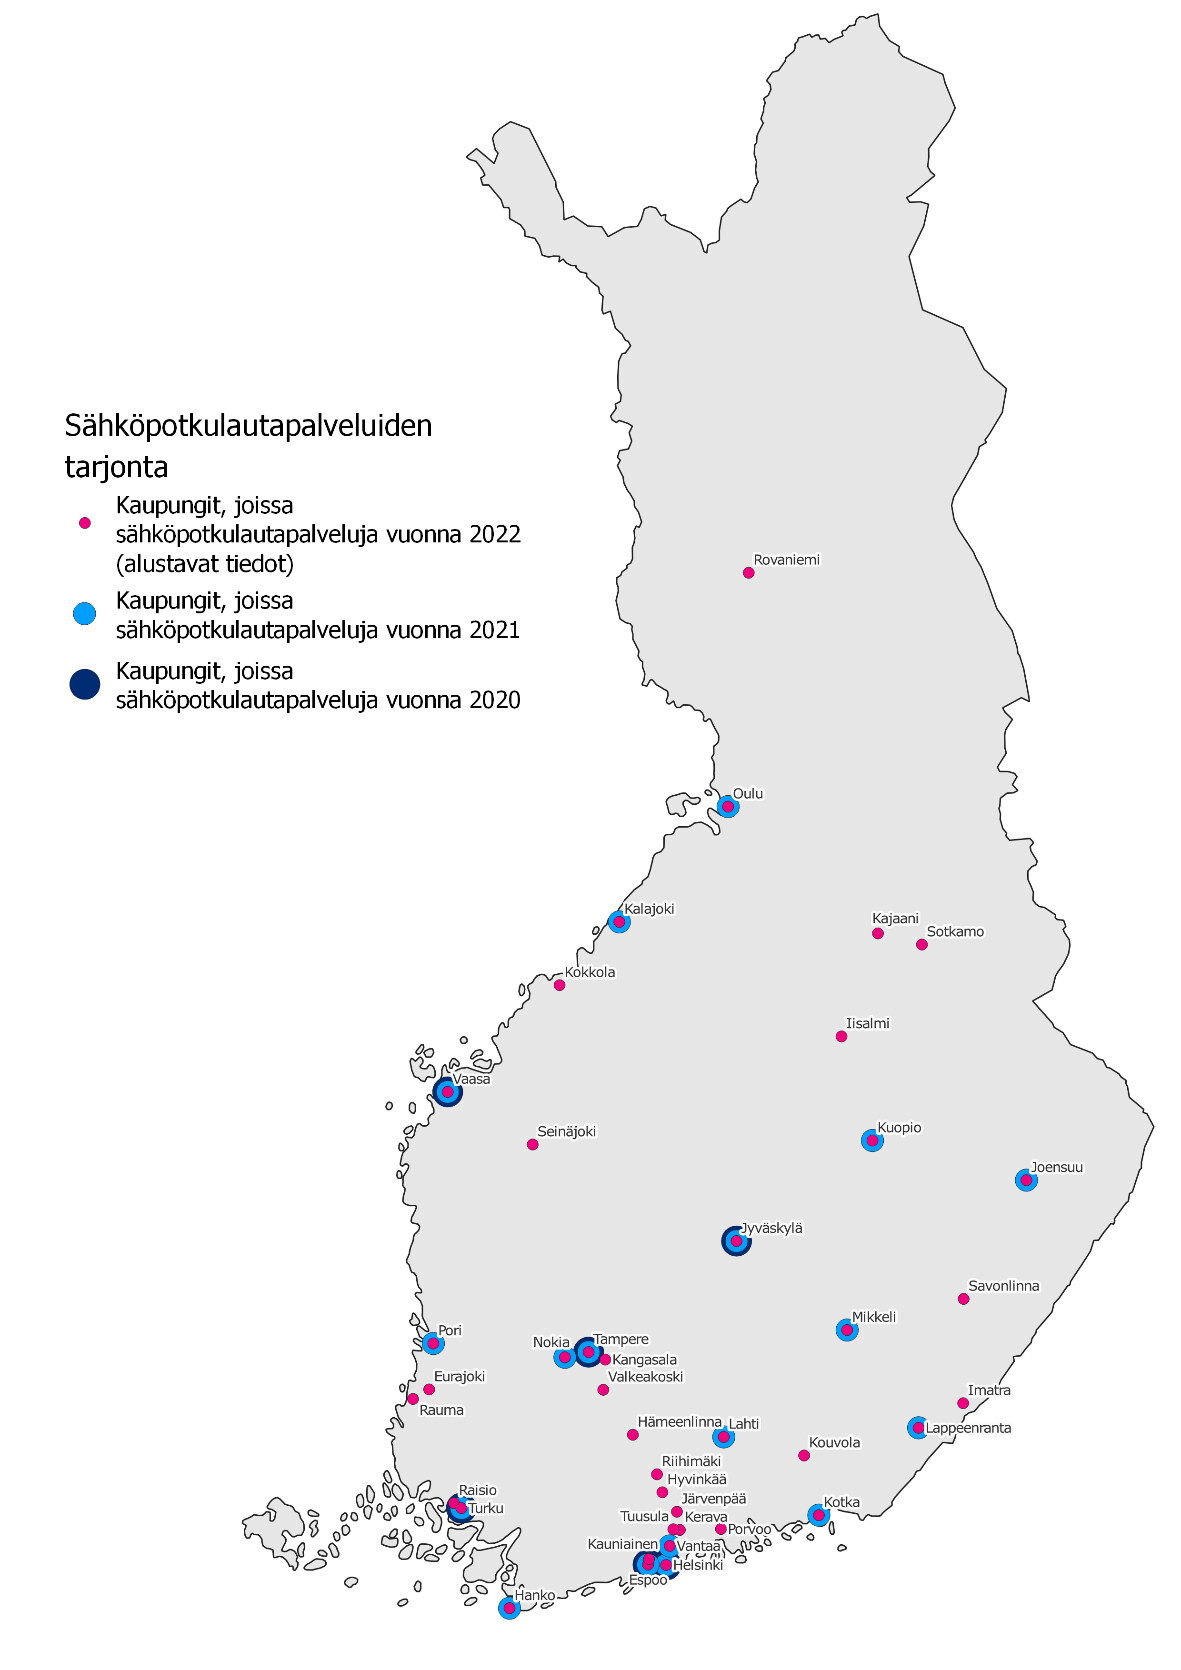 Kuvassa Suomen kartalla kaupungit, joissa sähköpotkulautapalveluita vuosina 2020, 2021 ja 2022